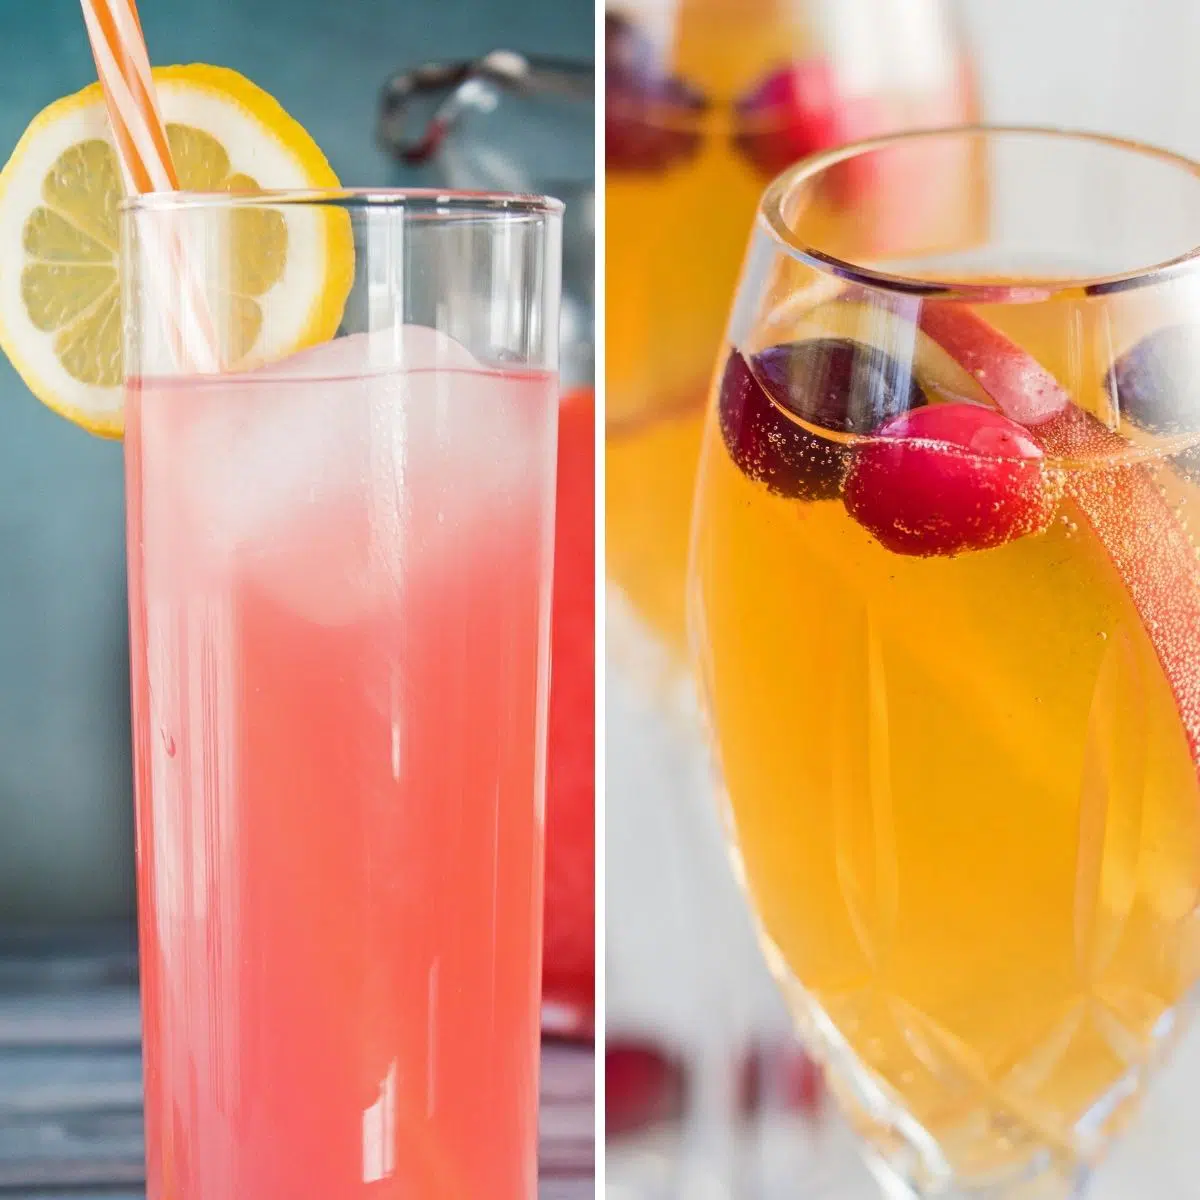 Изображение лучших рецептов безалкогольных коктейлей, показывающее два вкусных фаворита в прозрачных стаканах на квадратном изображении рядом друг с другом.